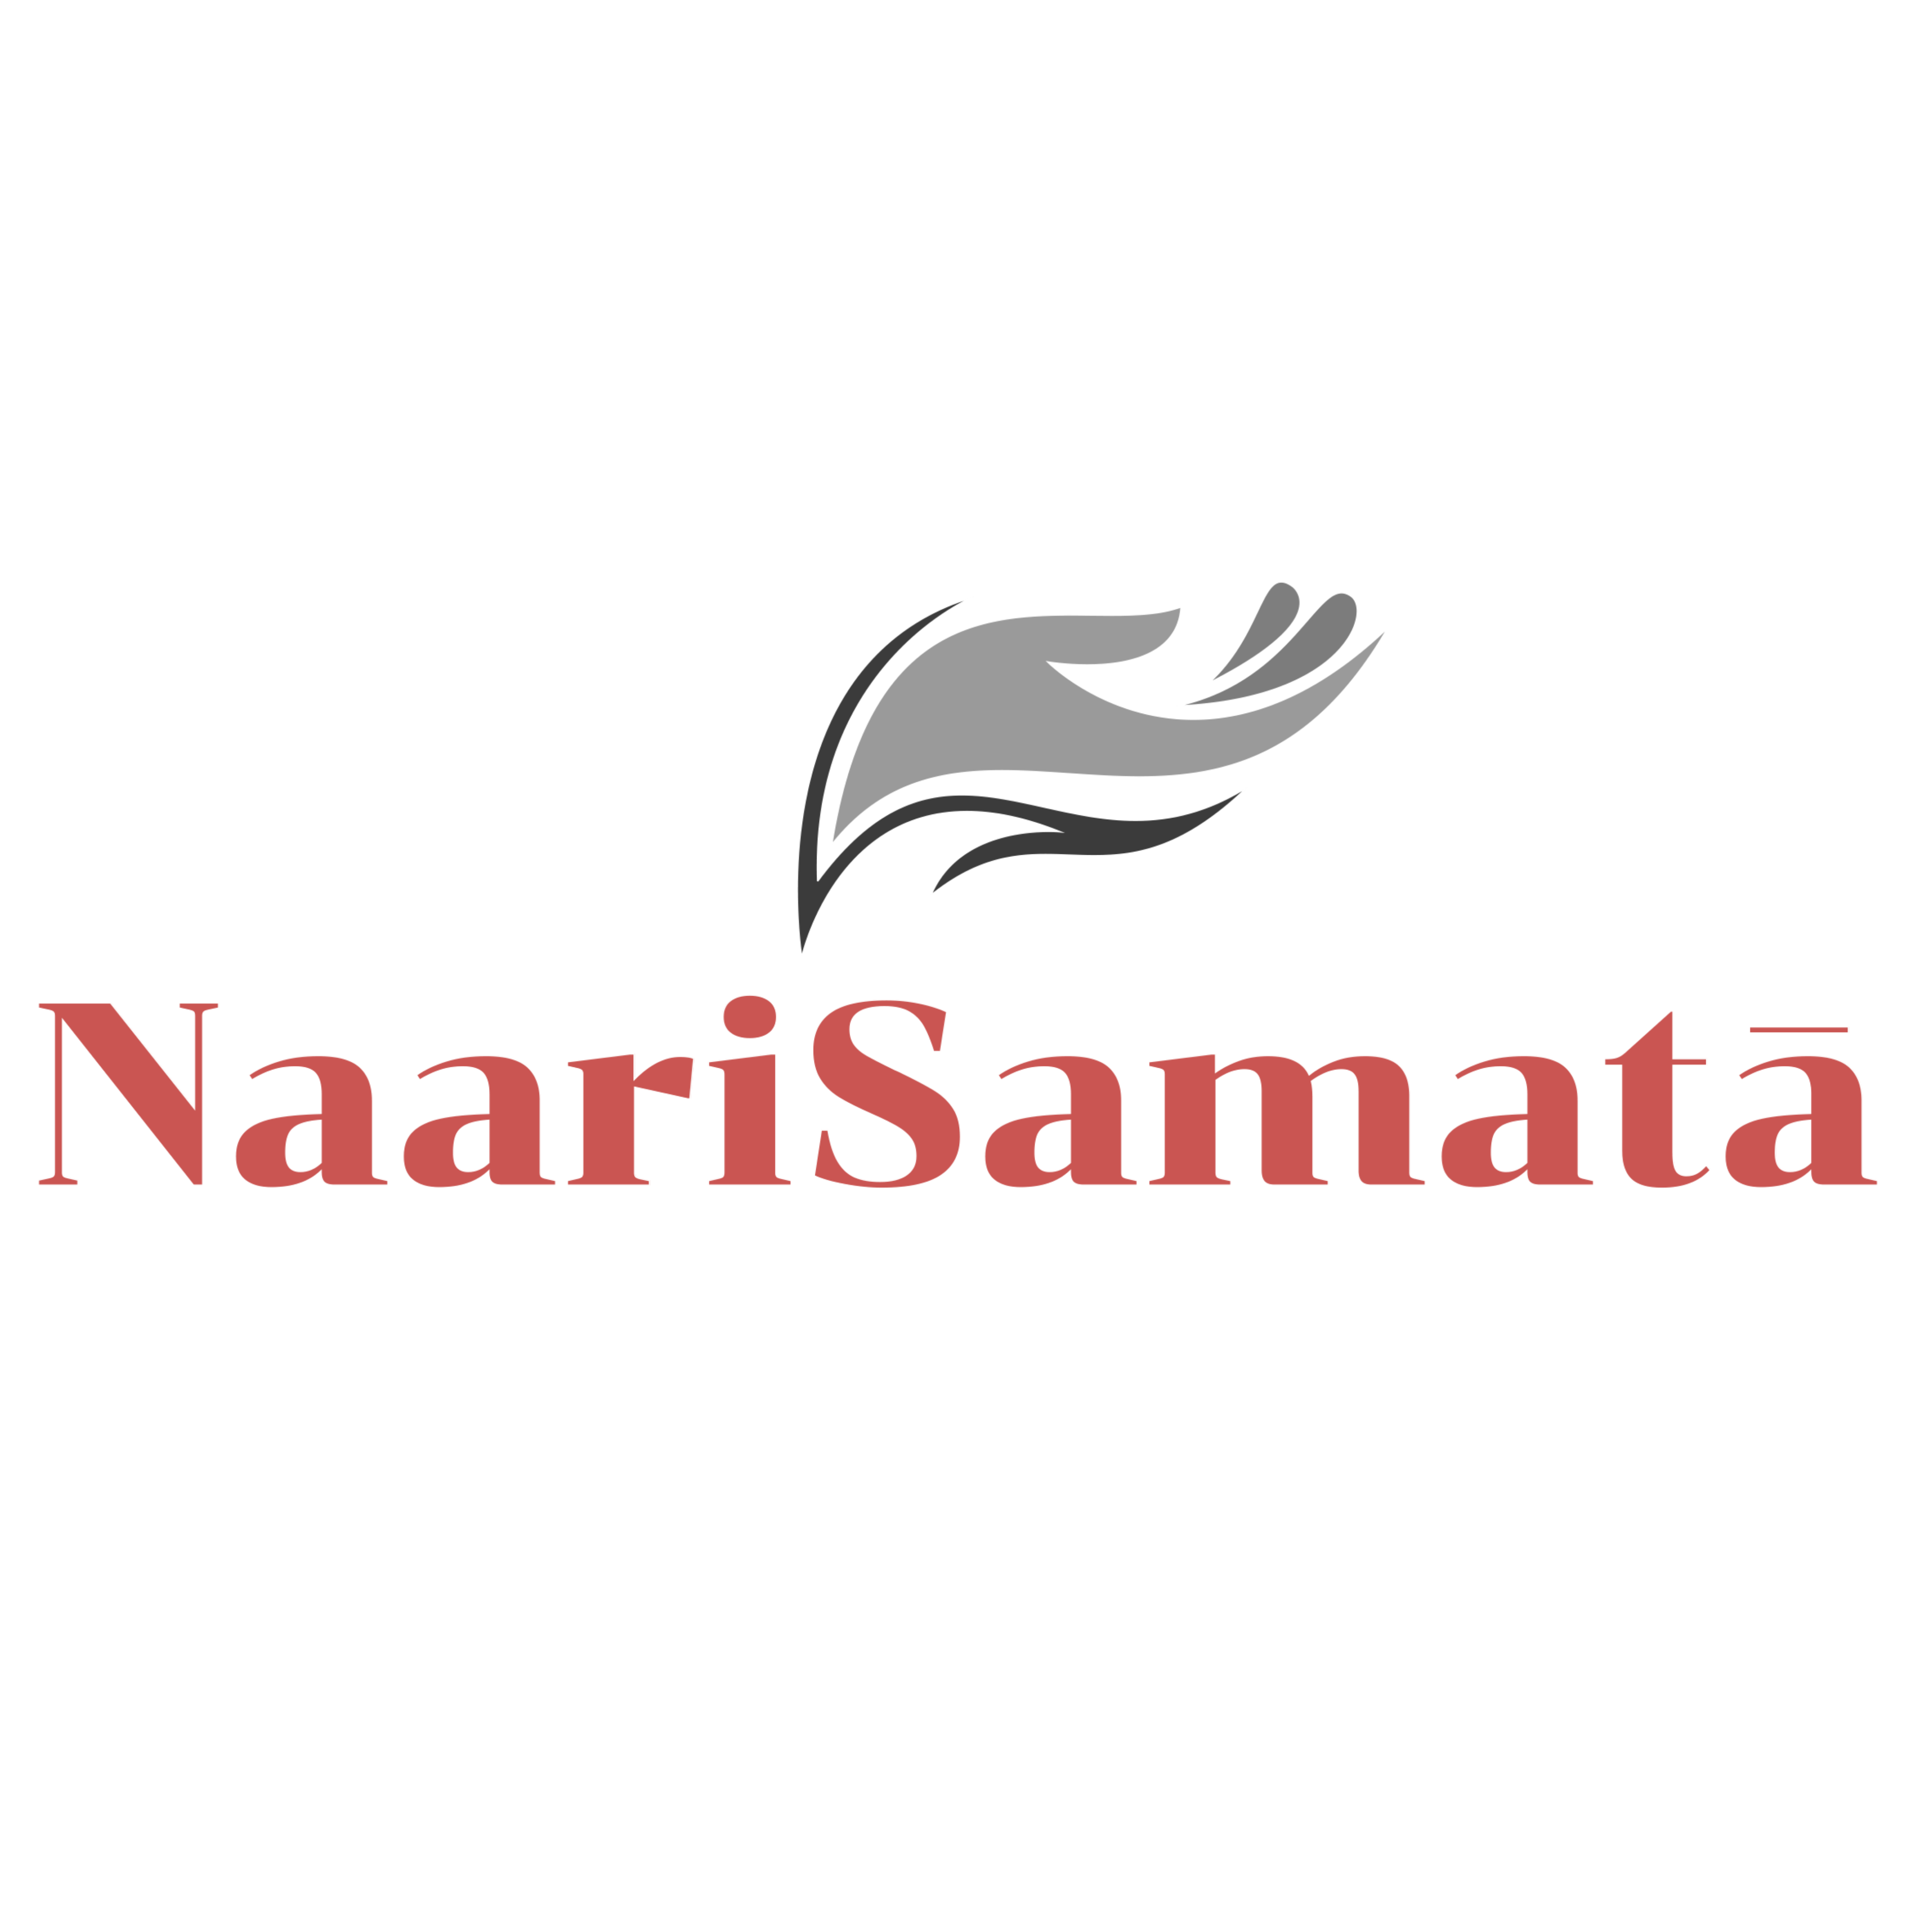 NaariSamata logo